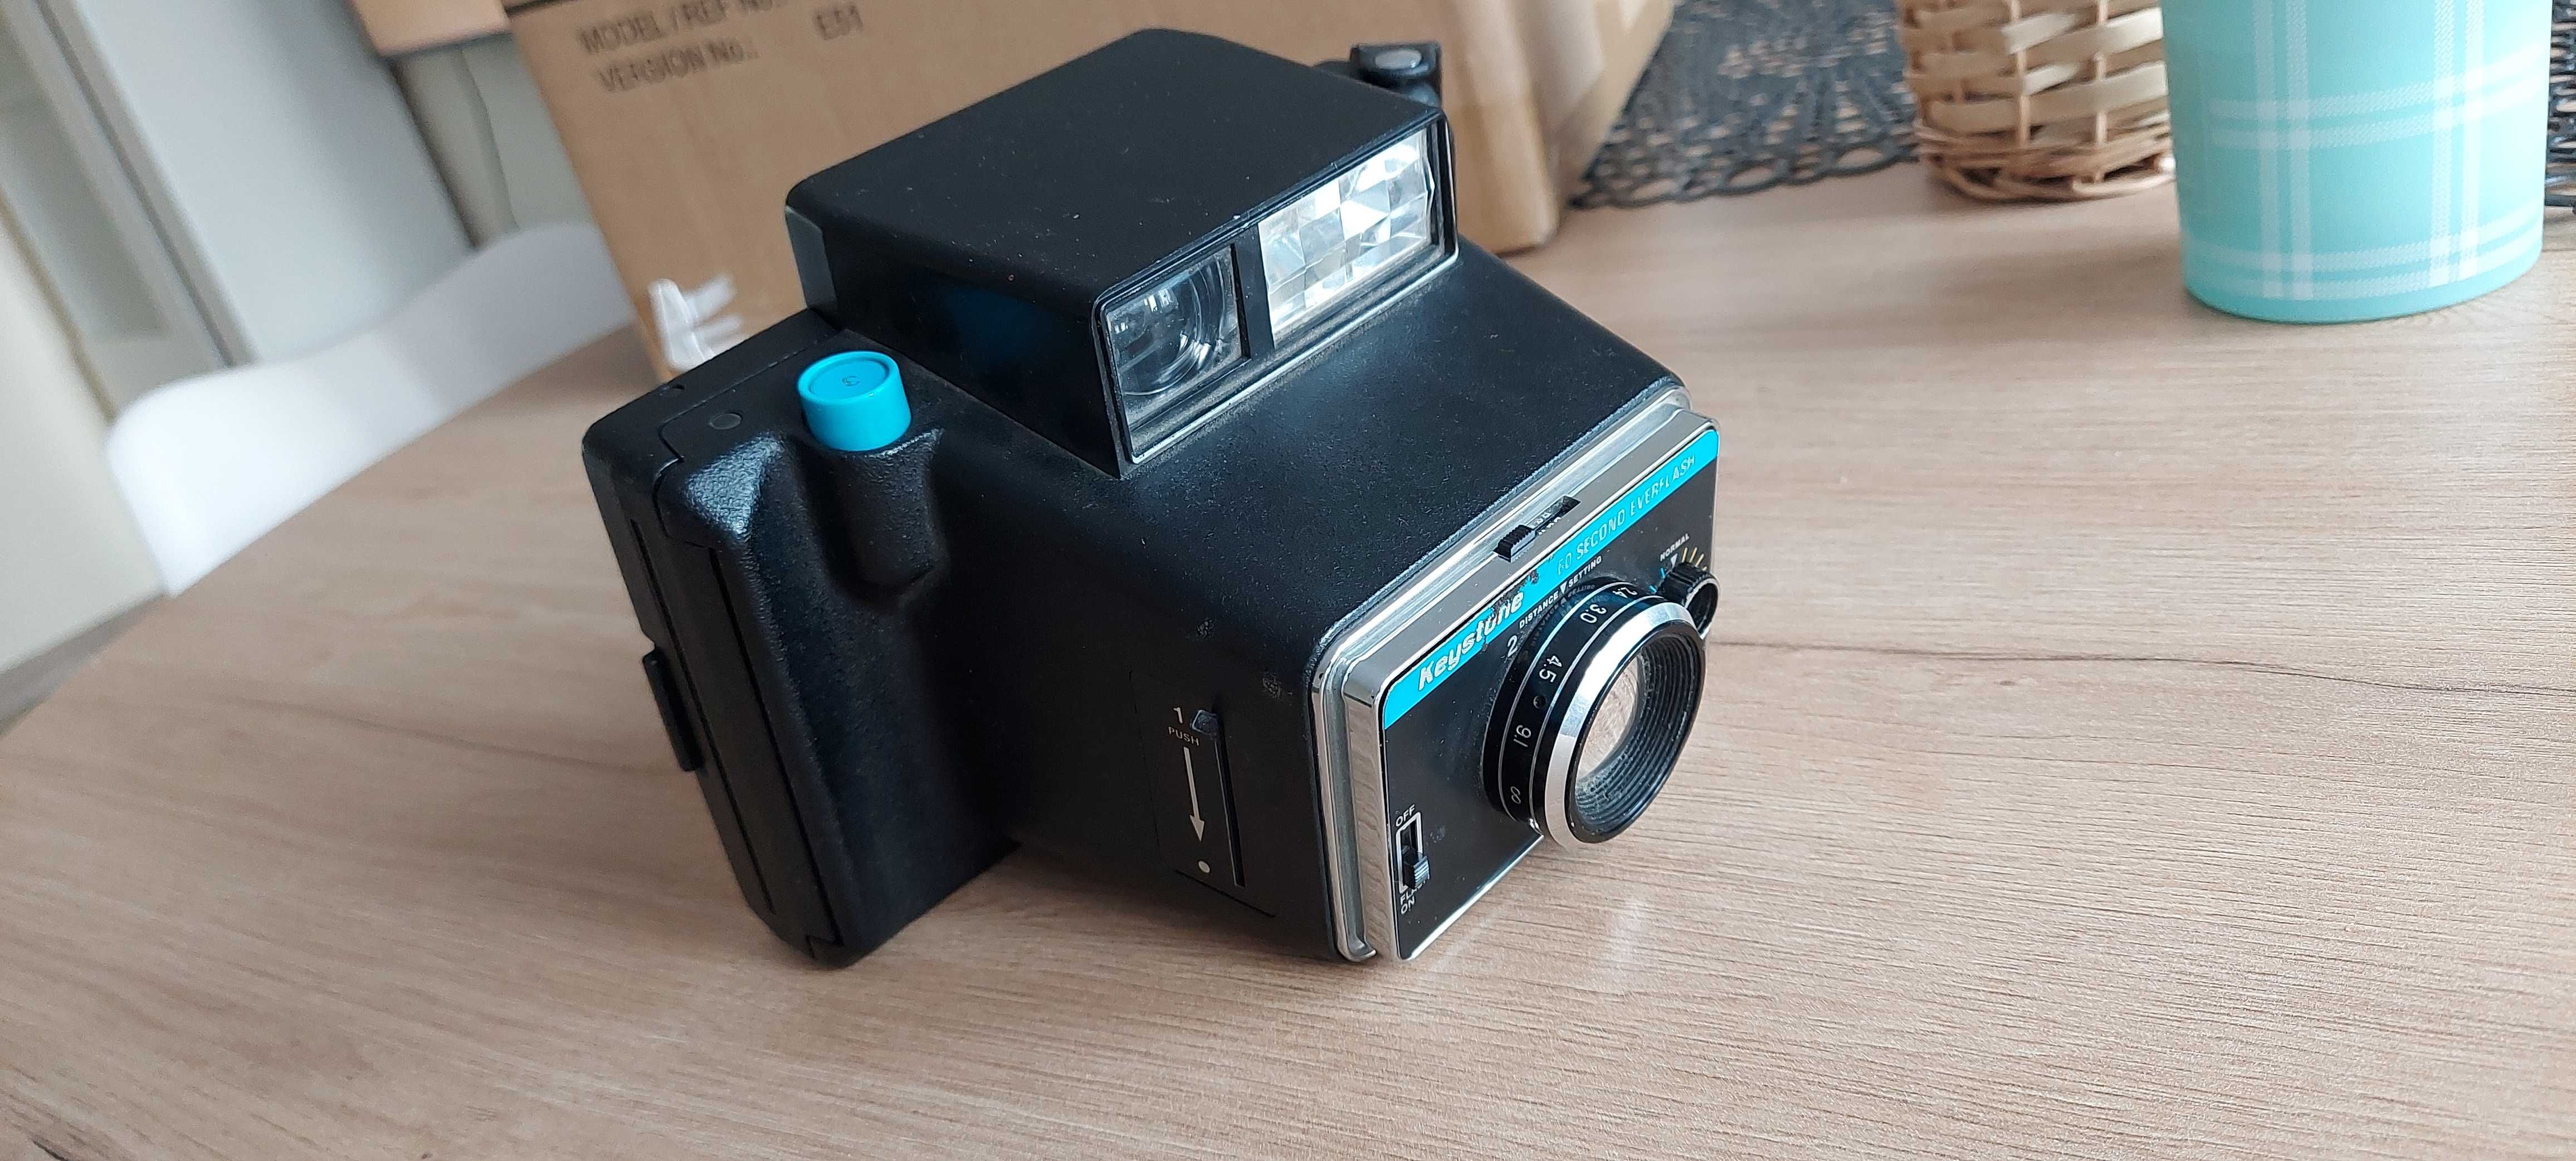 Aparat fotograficzny polaroid Keystone model 800